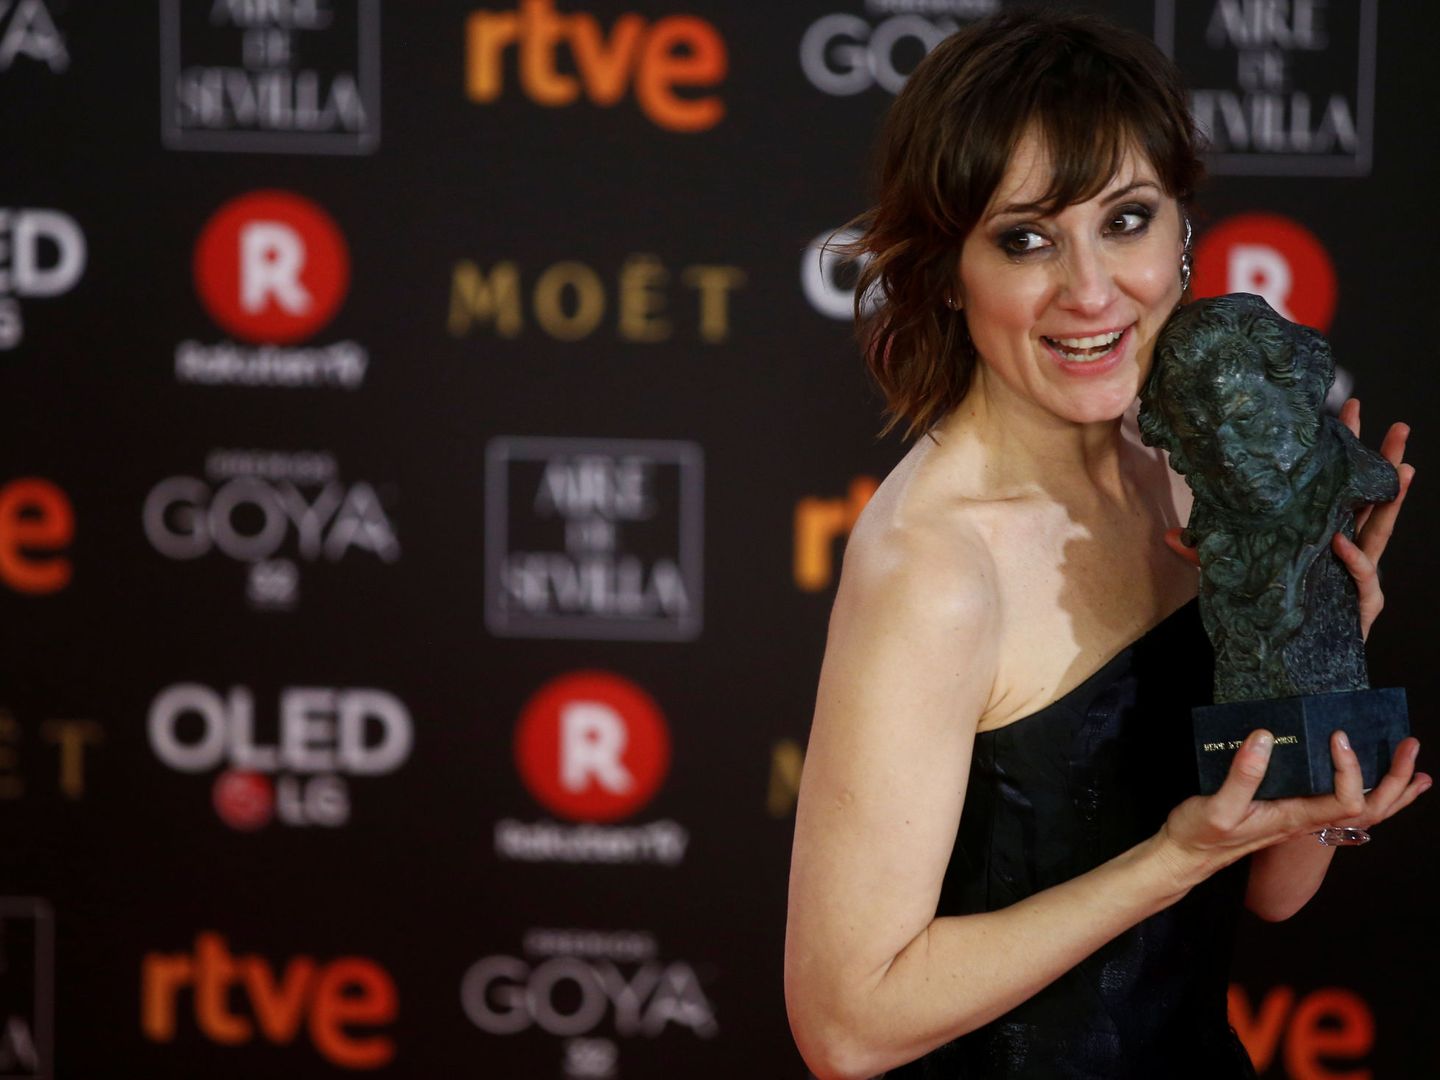 Nathalie Poza, ganadora del Goya a Mejor actriz revelación. (Reuters)